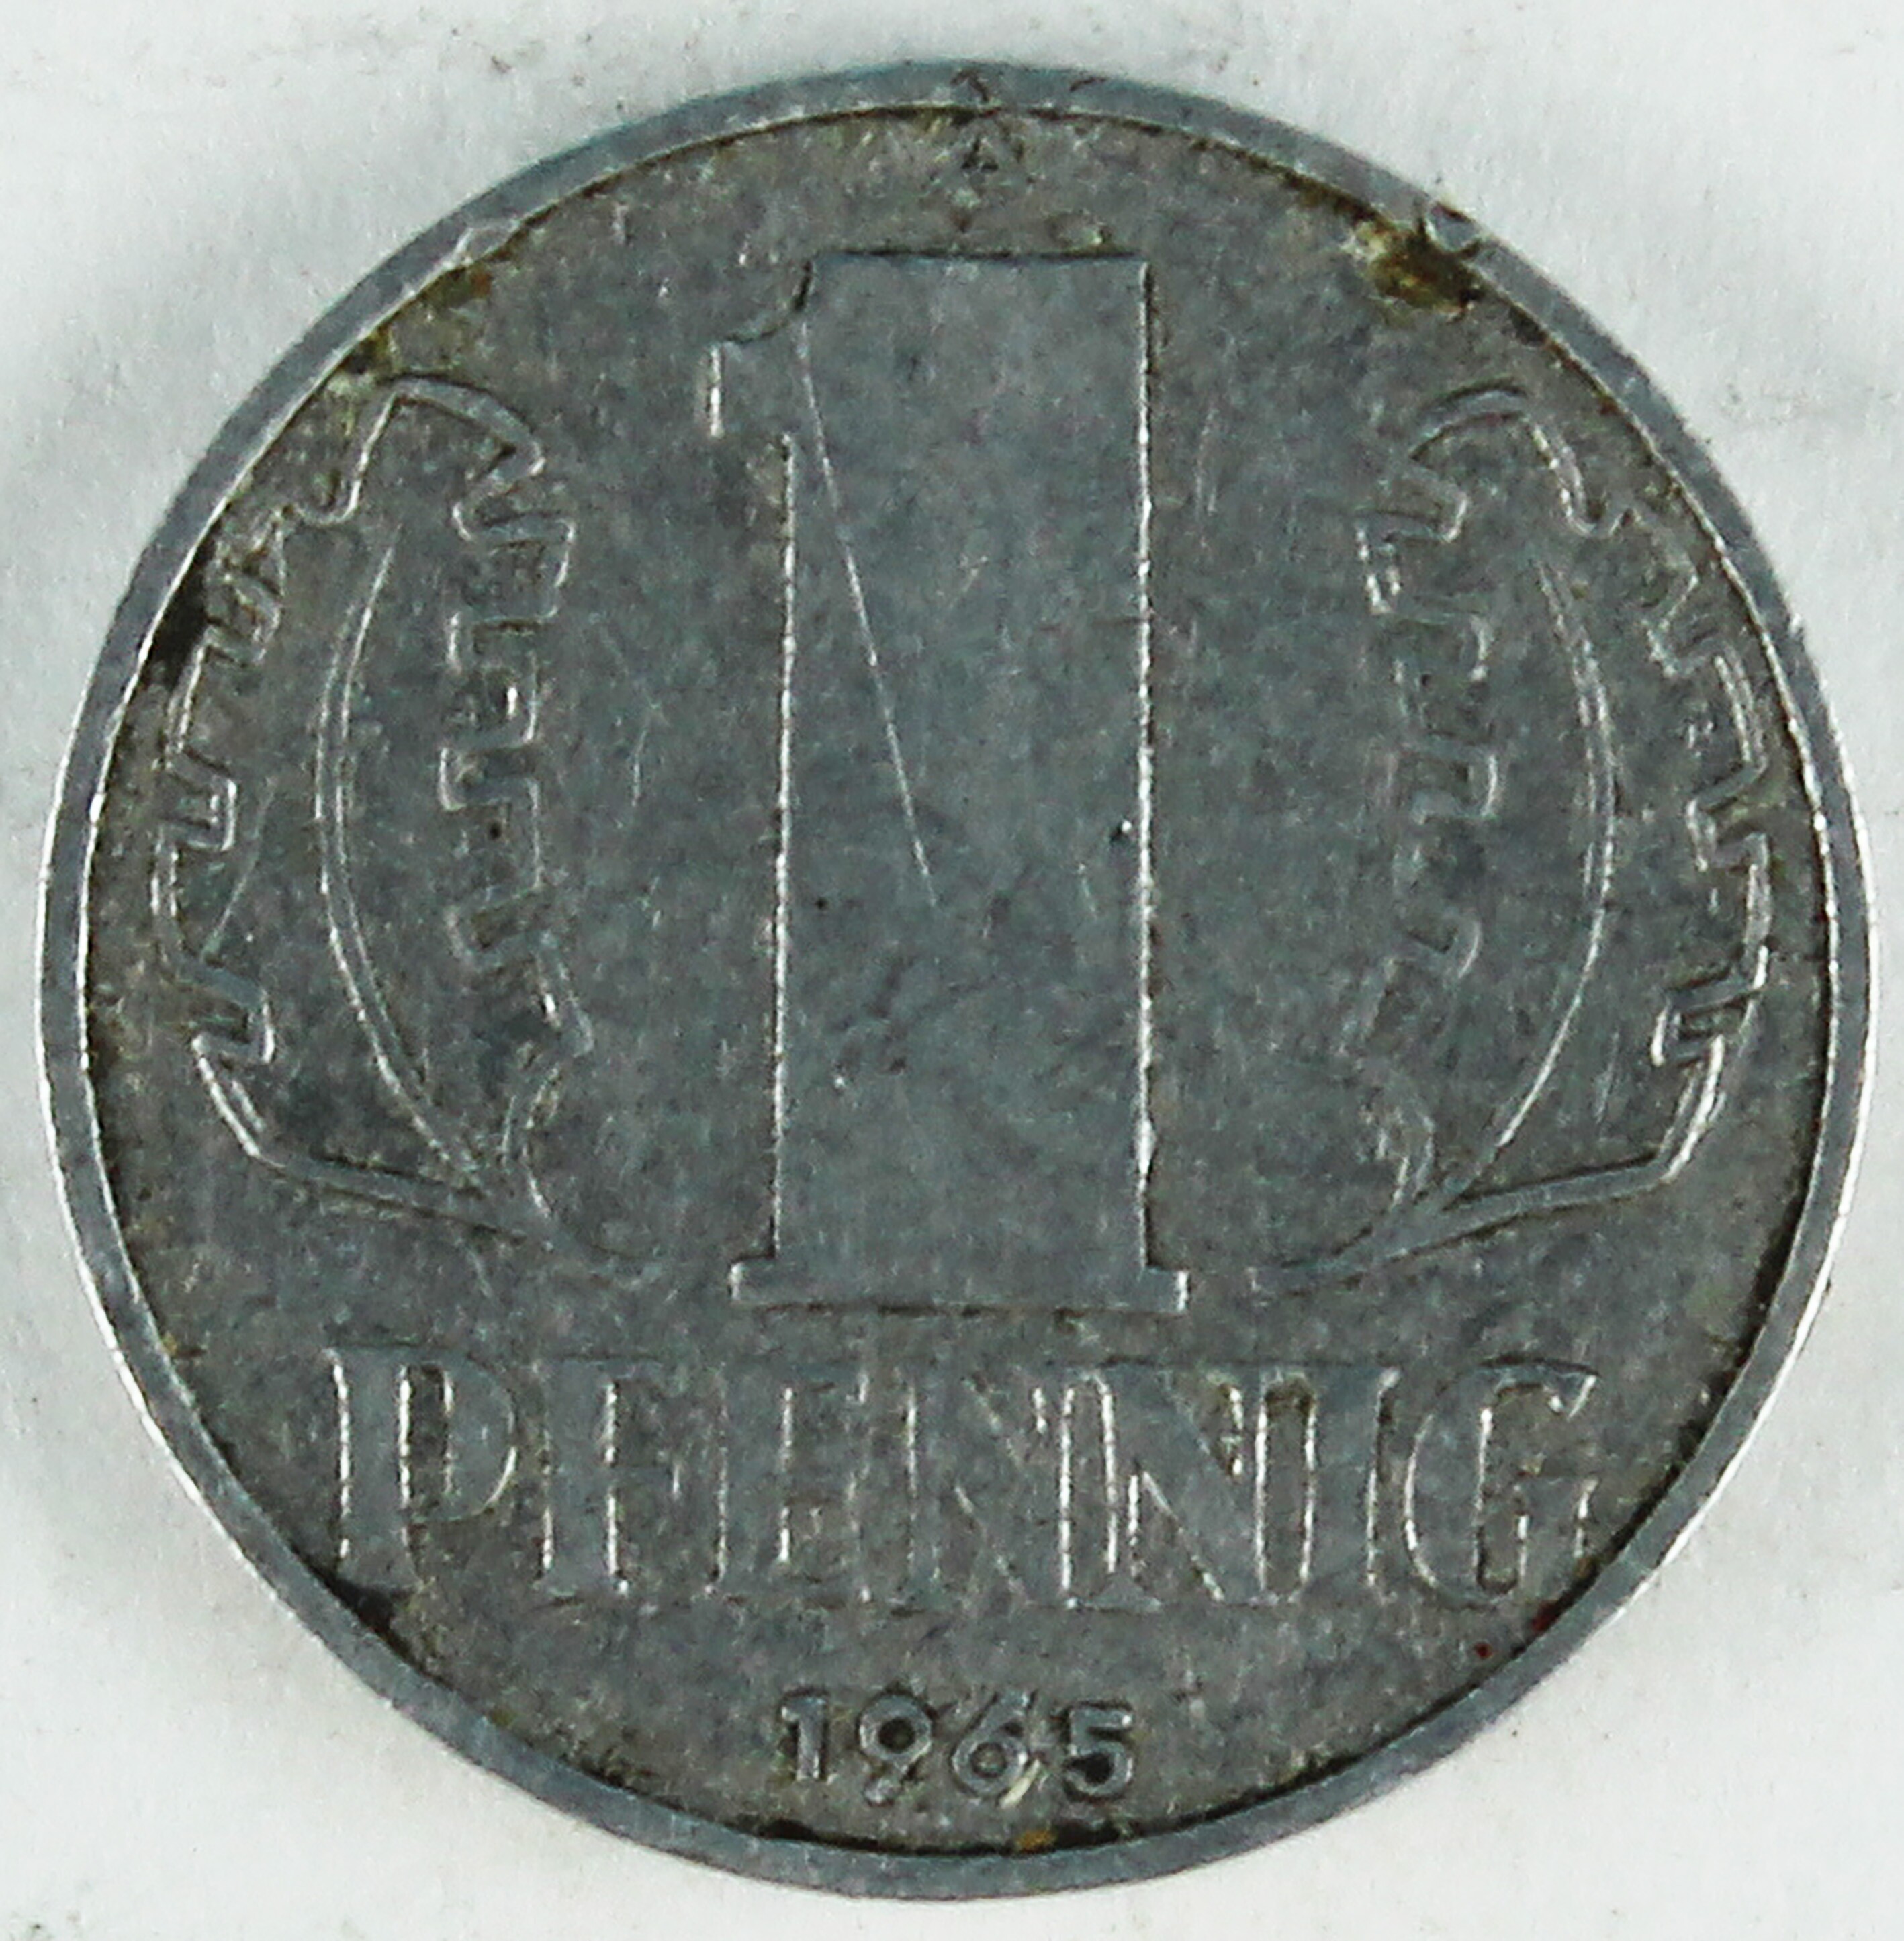 Münze 1965 (Museum Wolmirstedt RR-F)